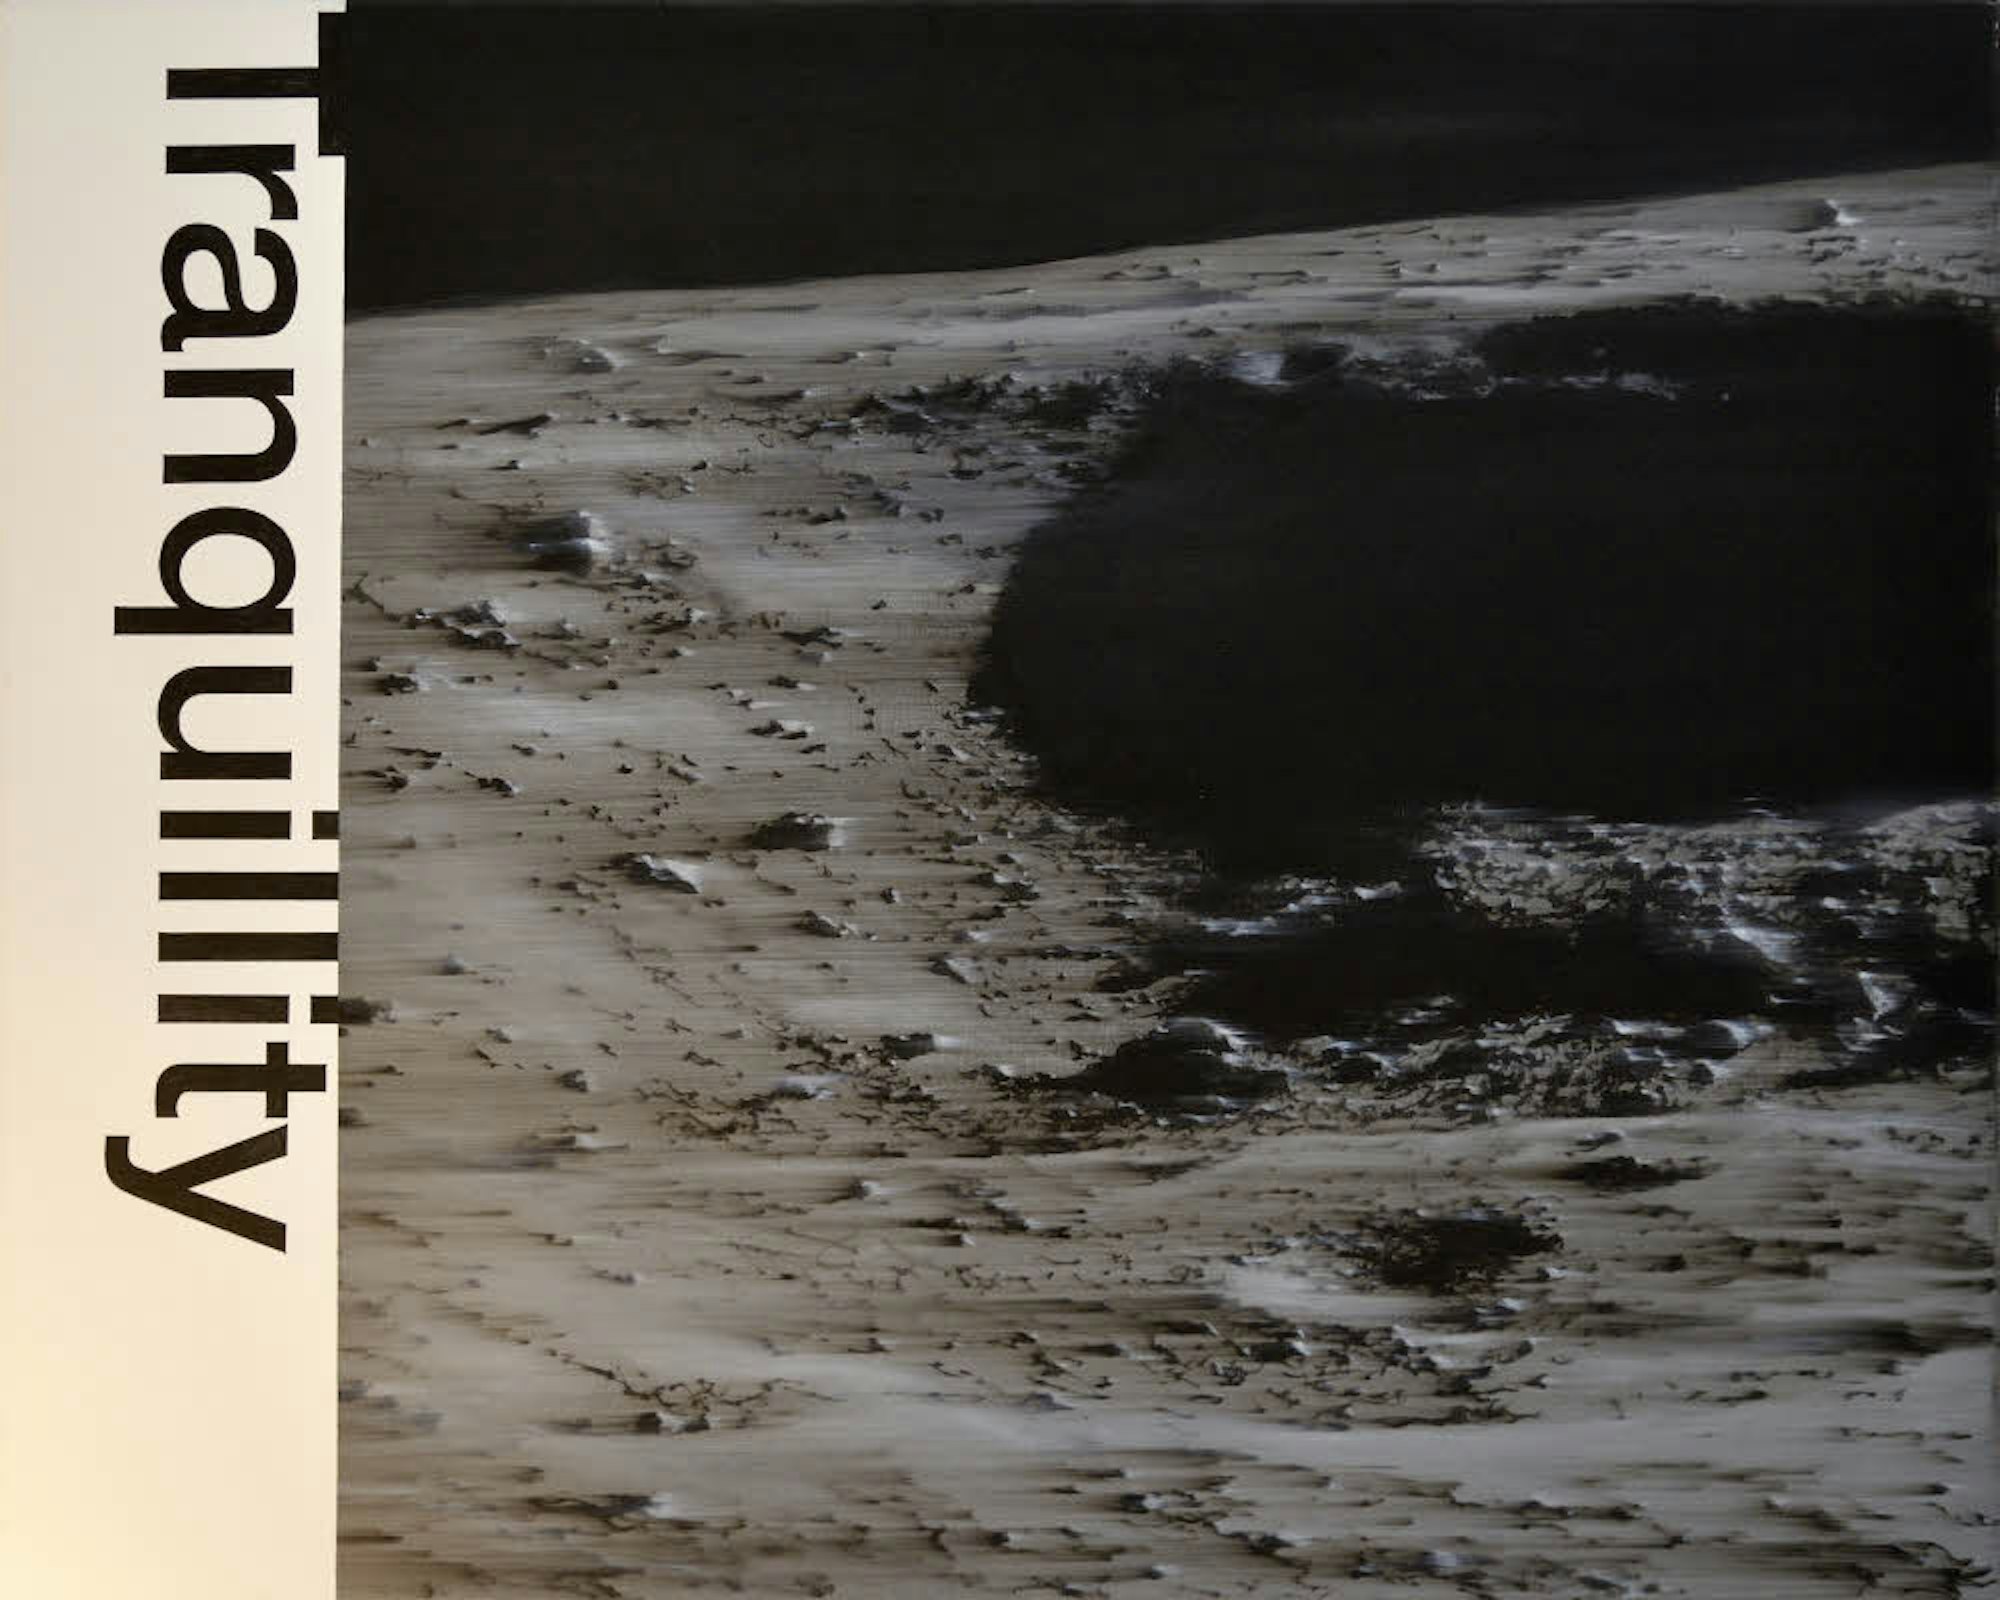 Die Landefläche von Apollo 11 am Tranquility-Mondmeer in der Interpretation des Künstlers.